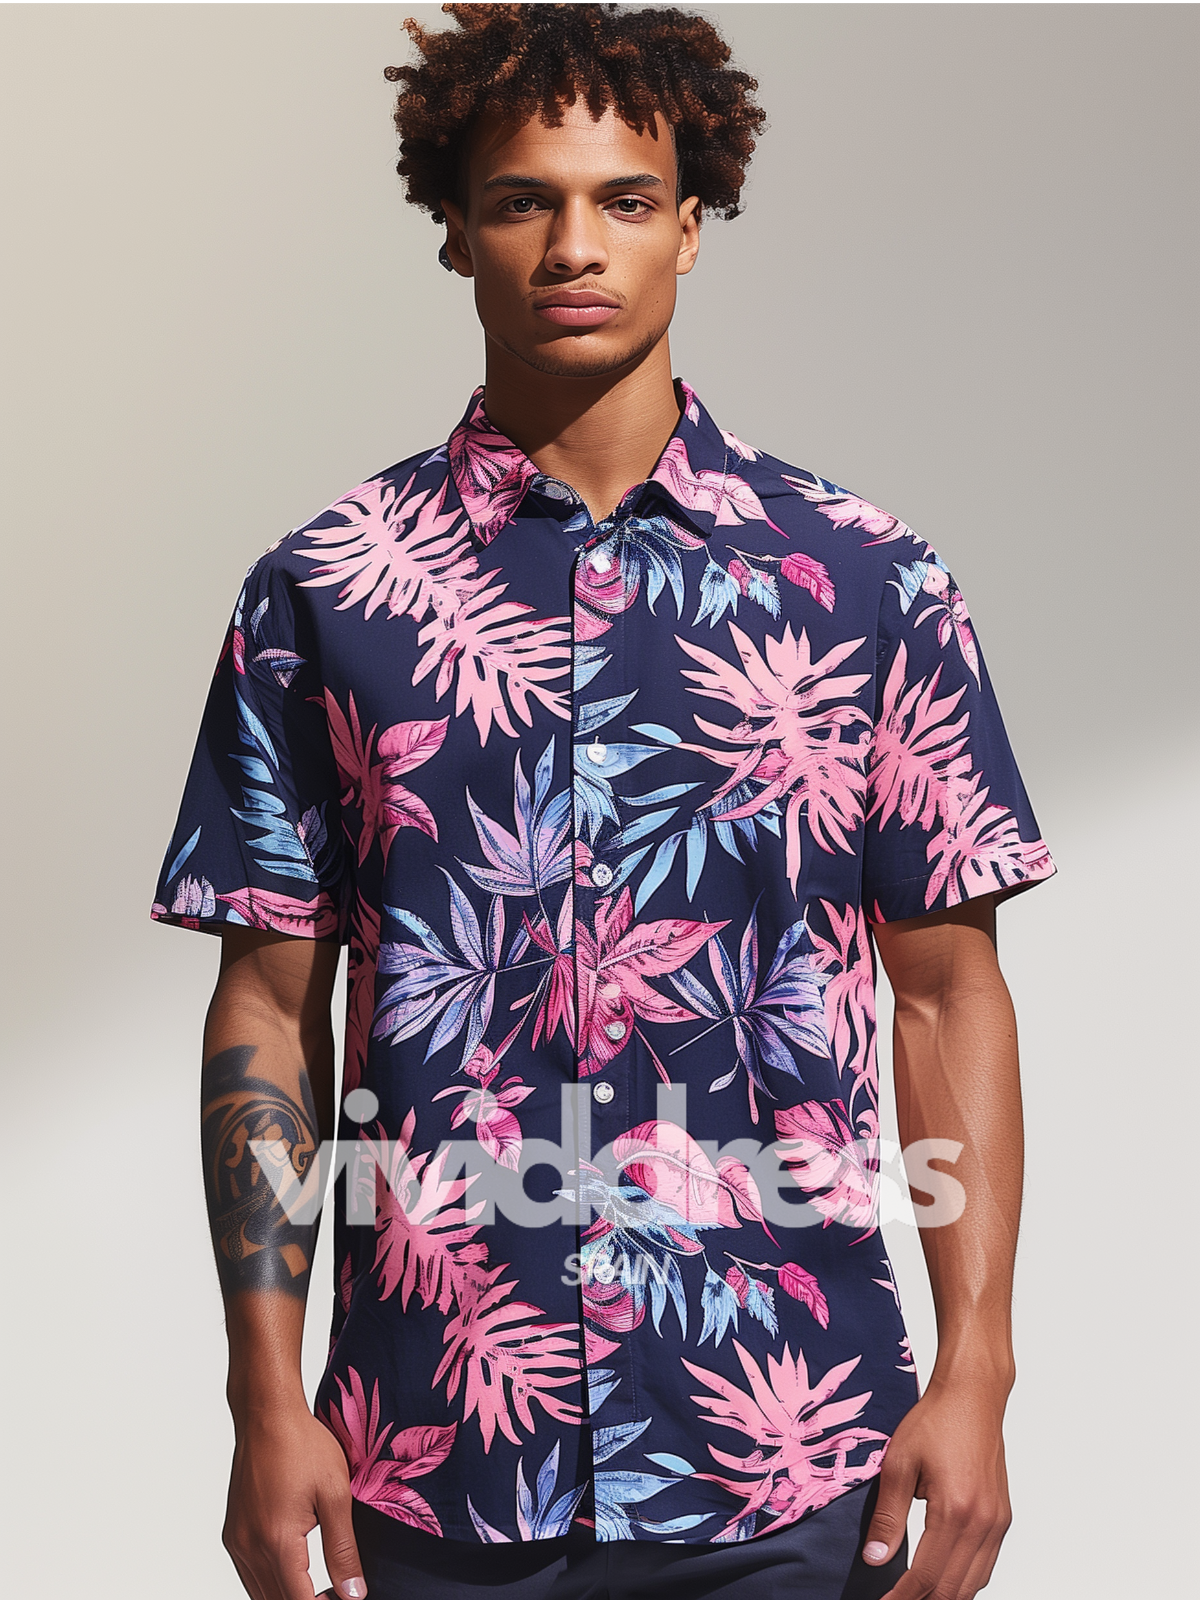 Men's Floral Print Blue Beach Summer Holiday Short Sleeve Shirt